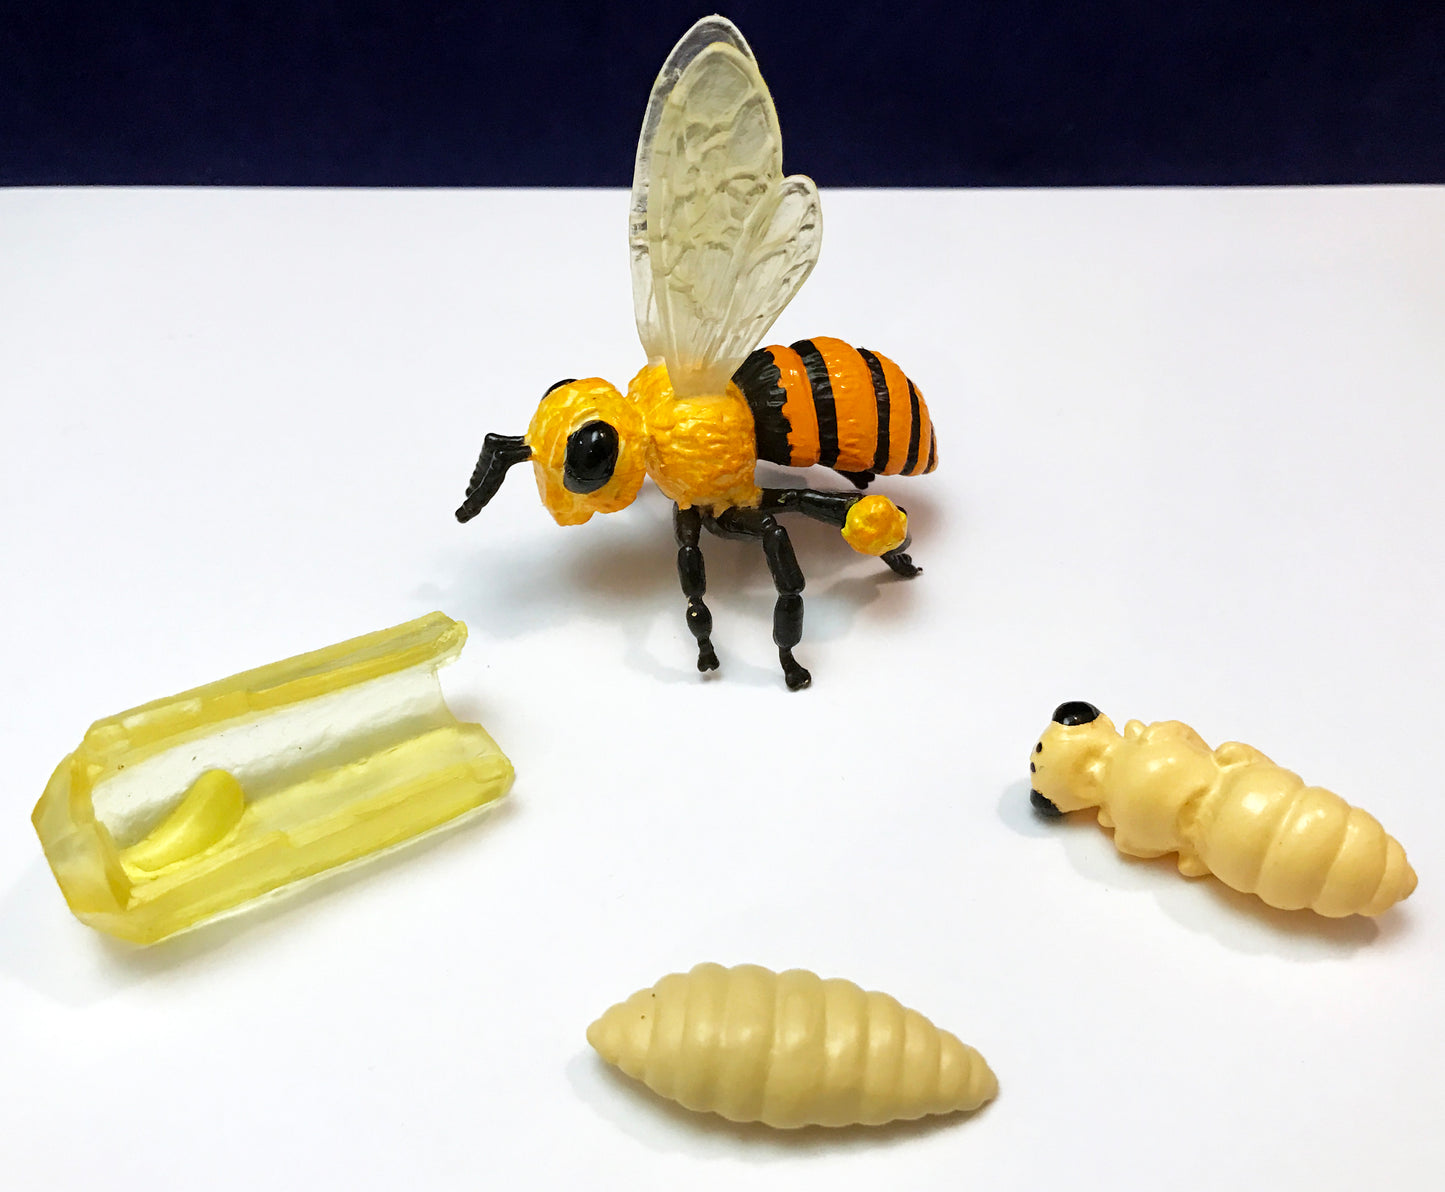 Bee life cycle figures